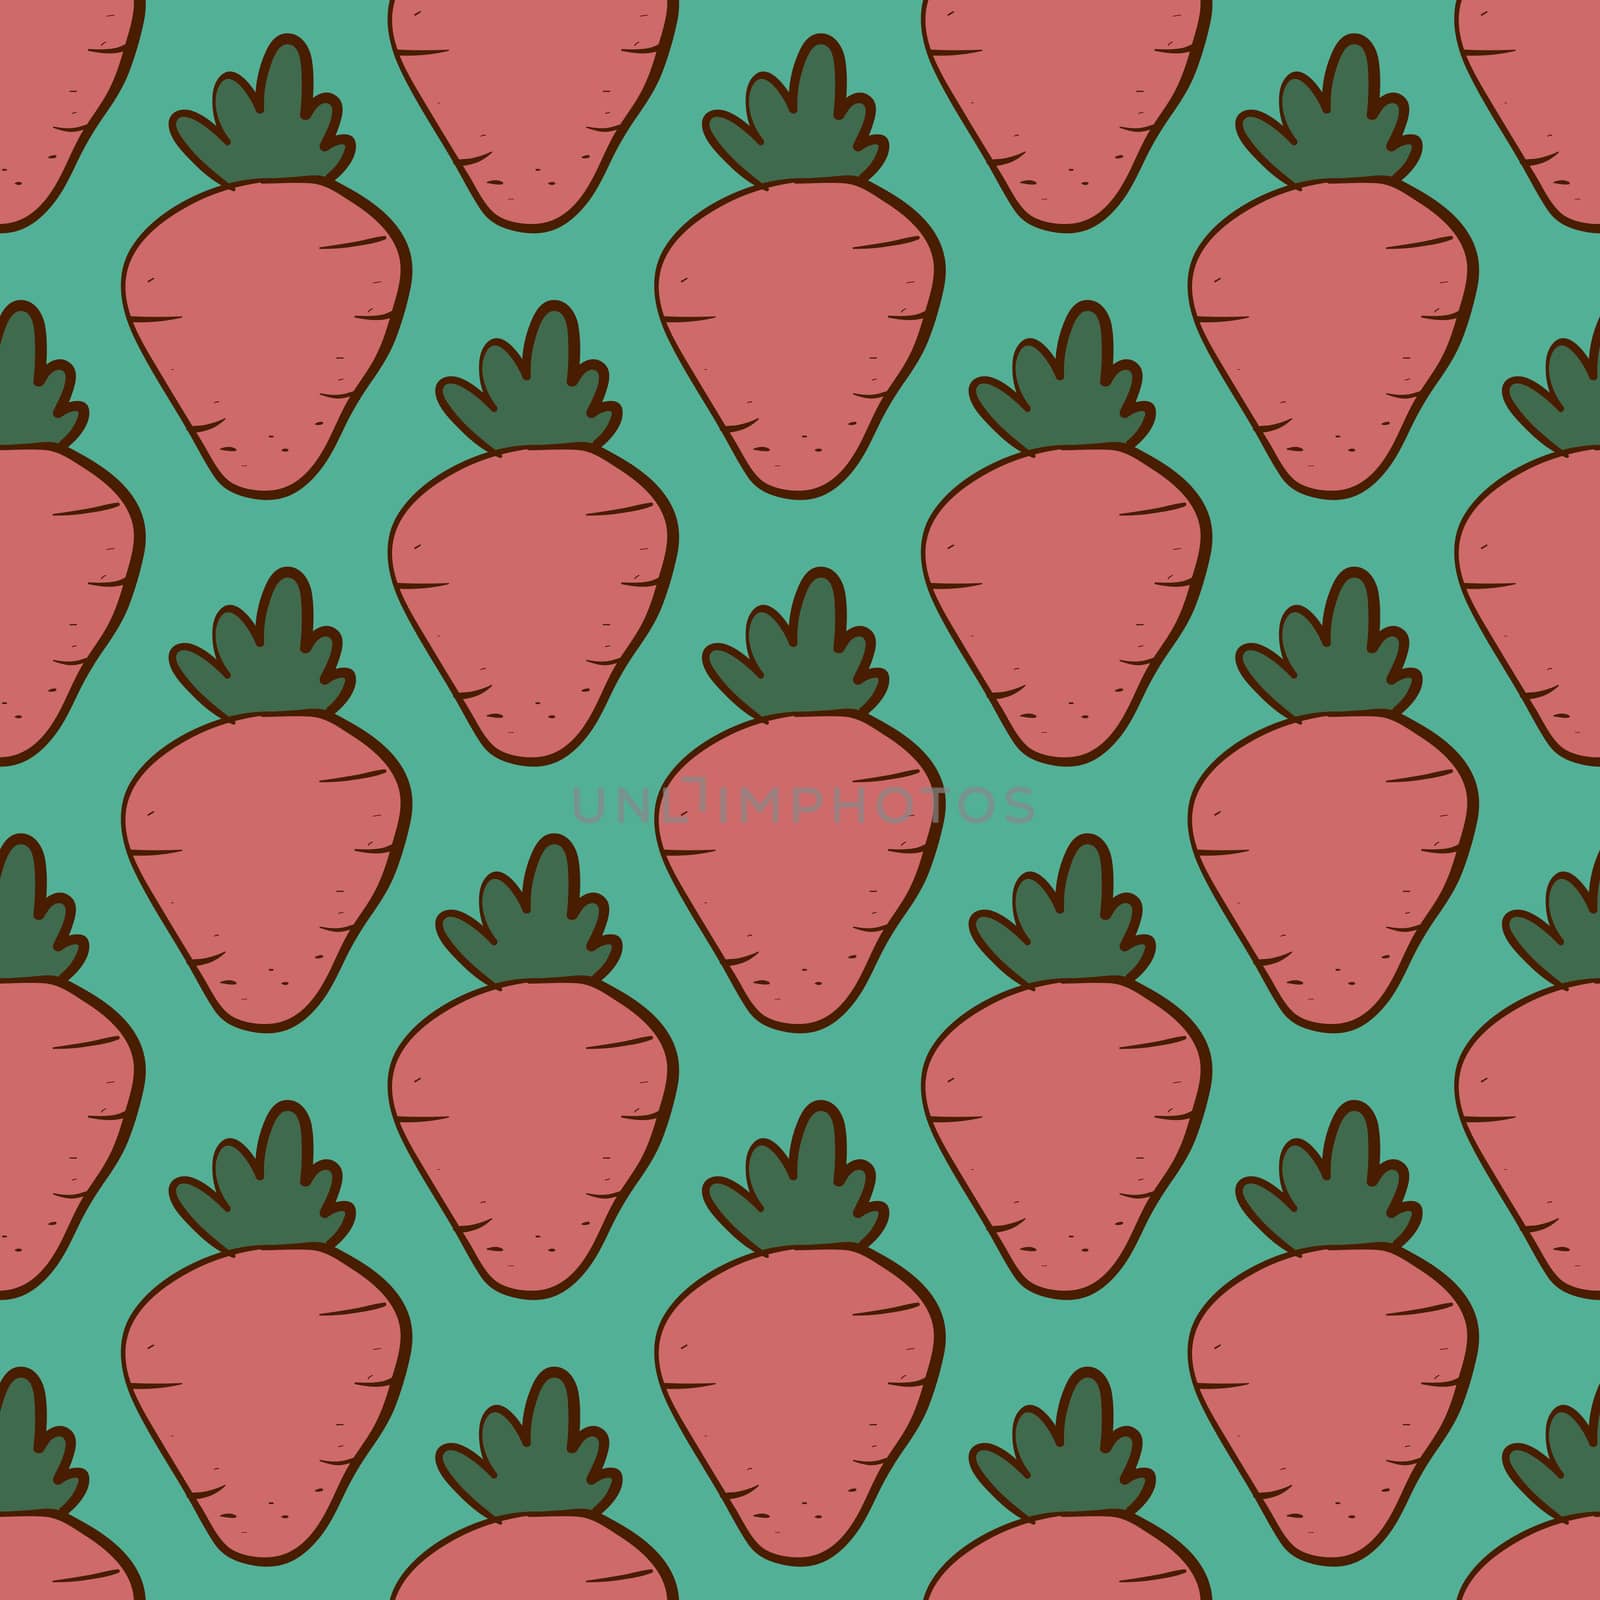 Carrot pattern , illustration, vector on white background by Morphart